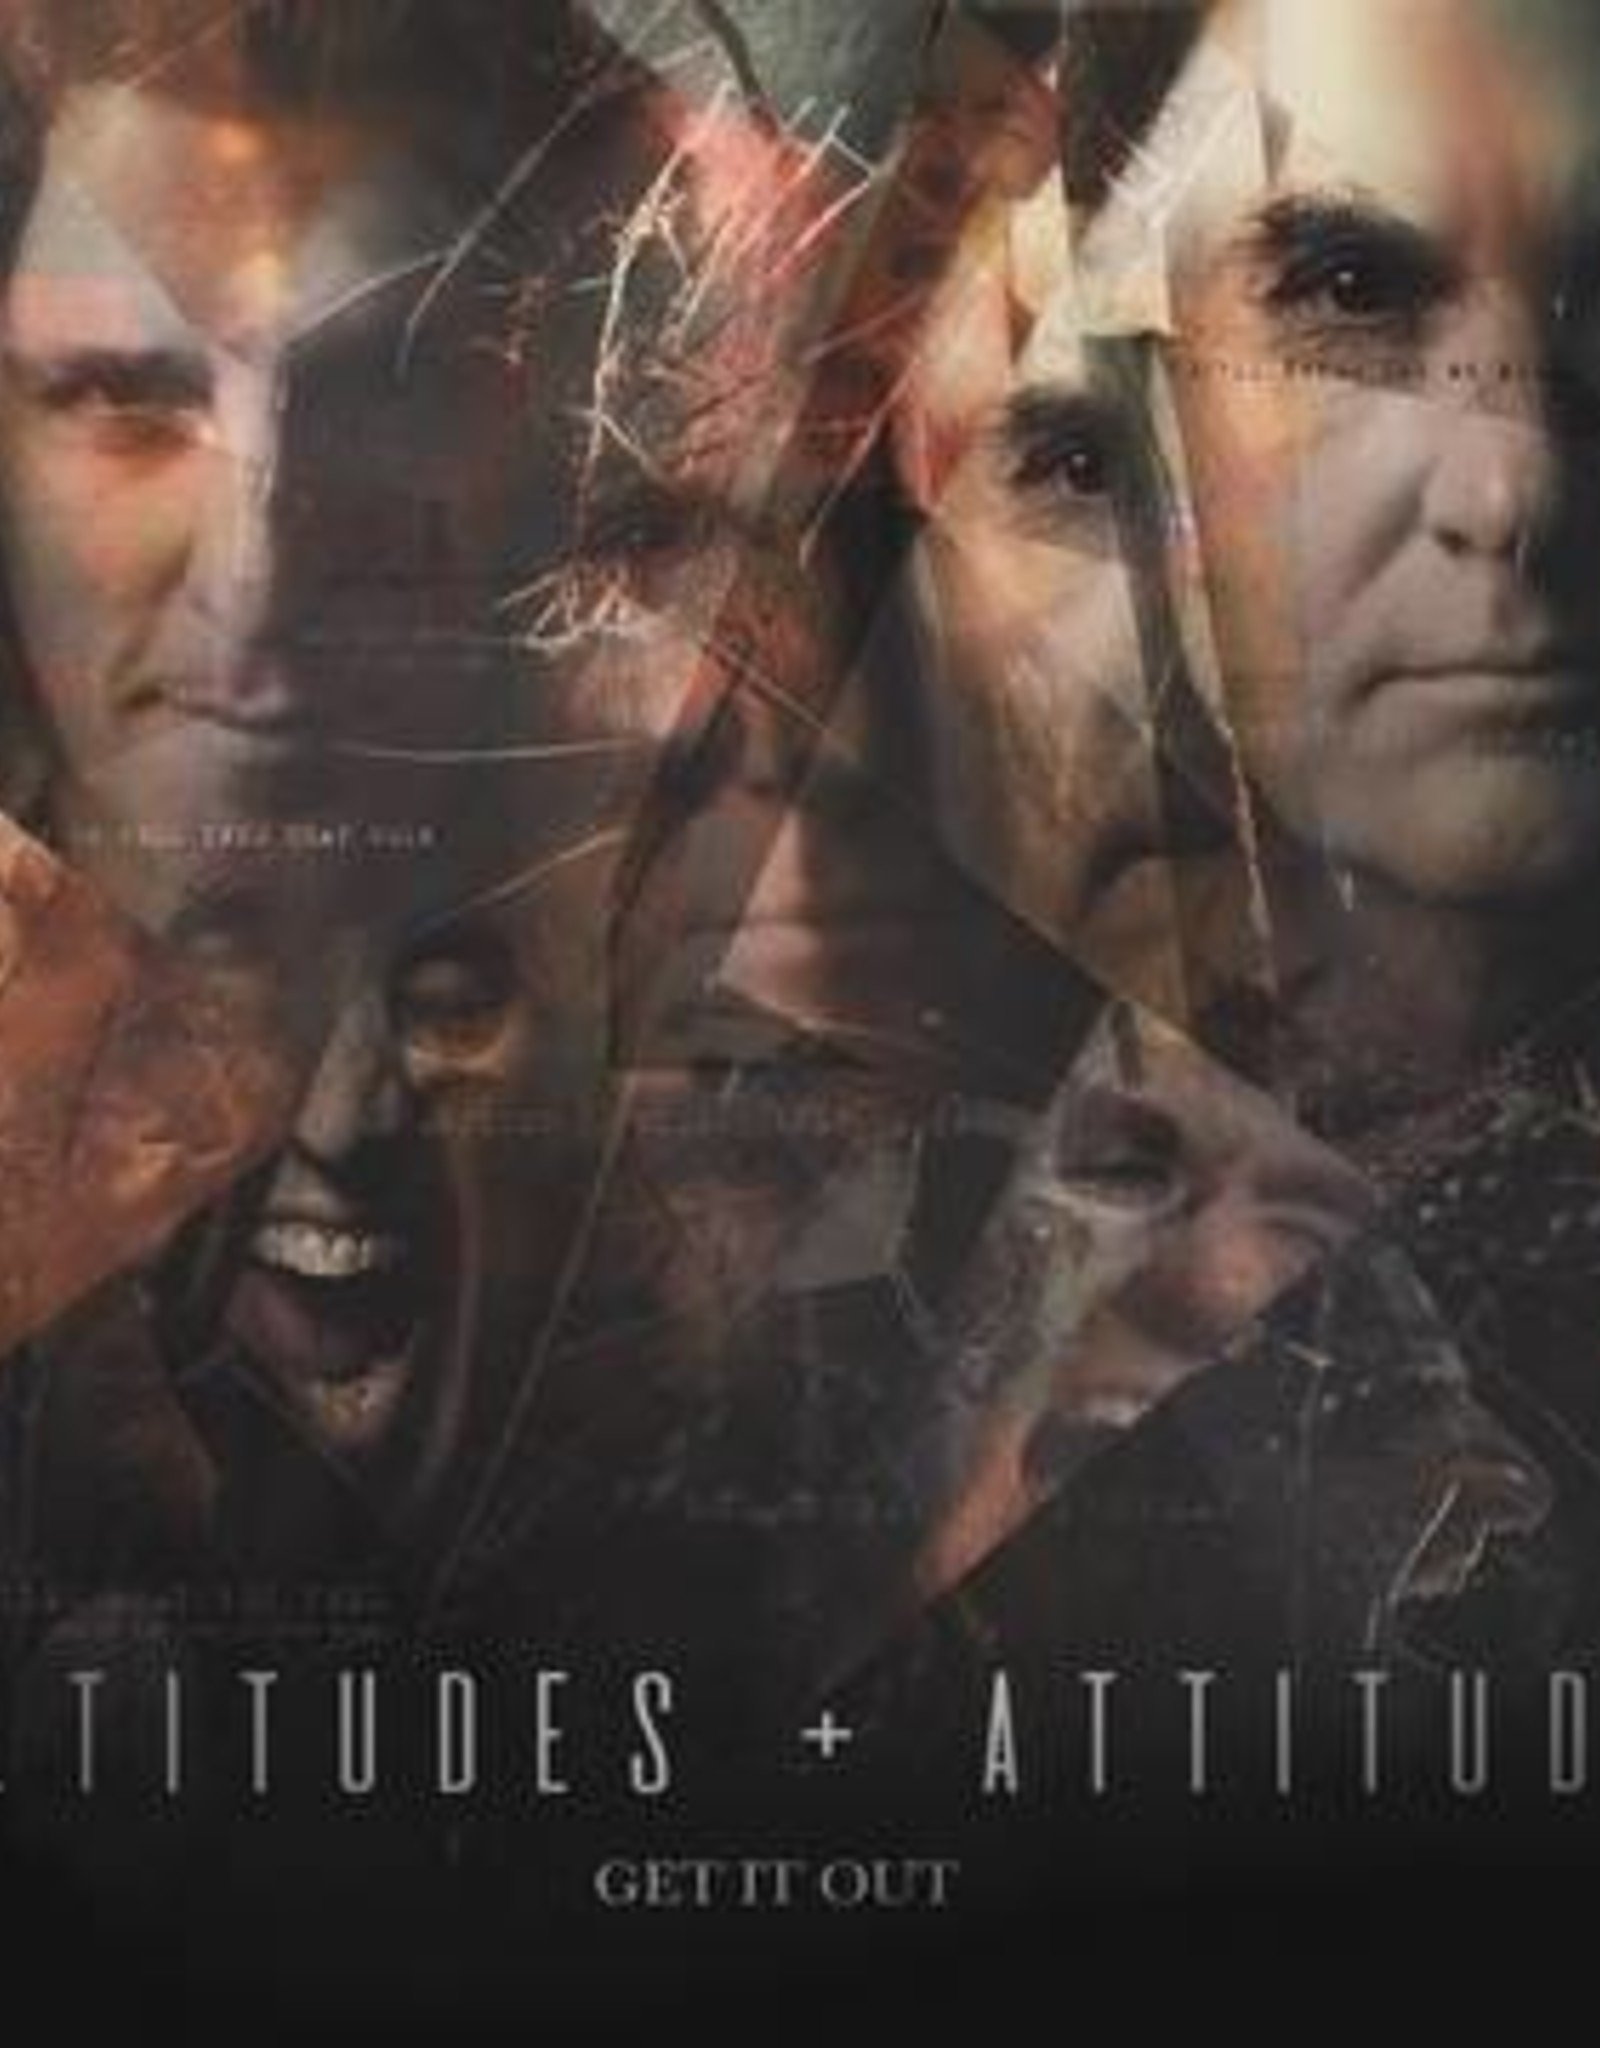 Altitudes & Attitude - Get It Out (Picutre Disc/Autographed Insert) (Rsd 2019)